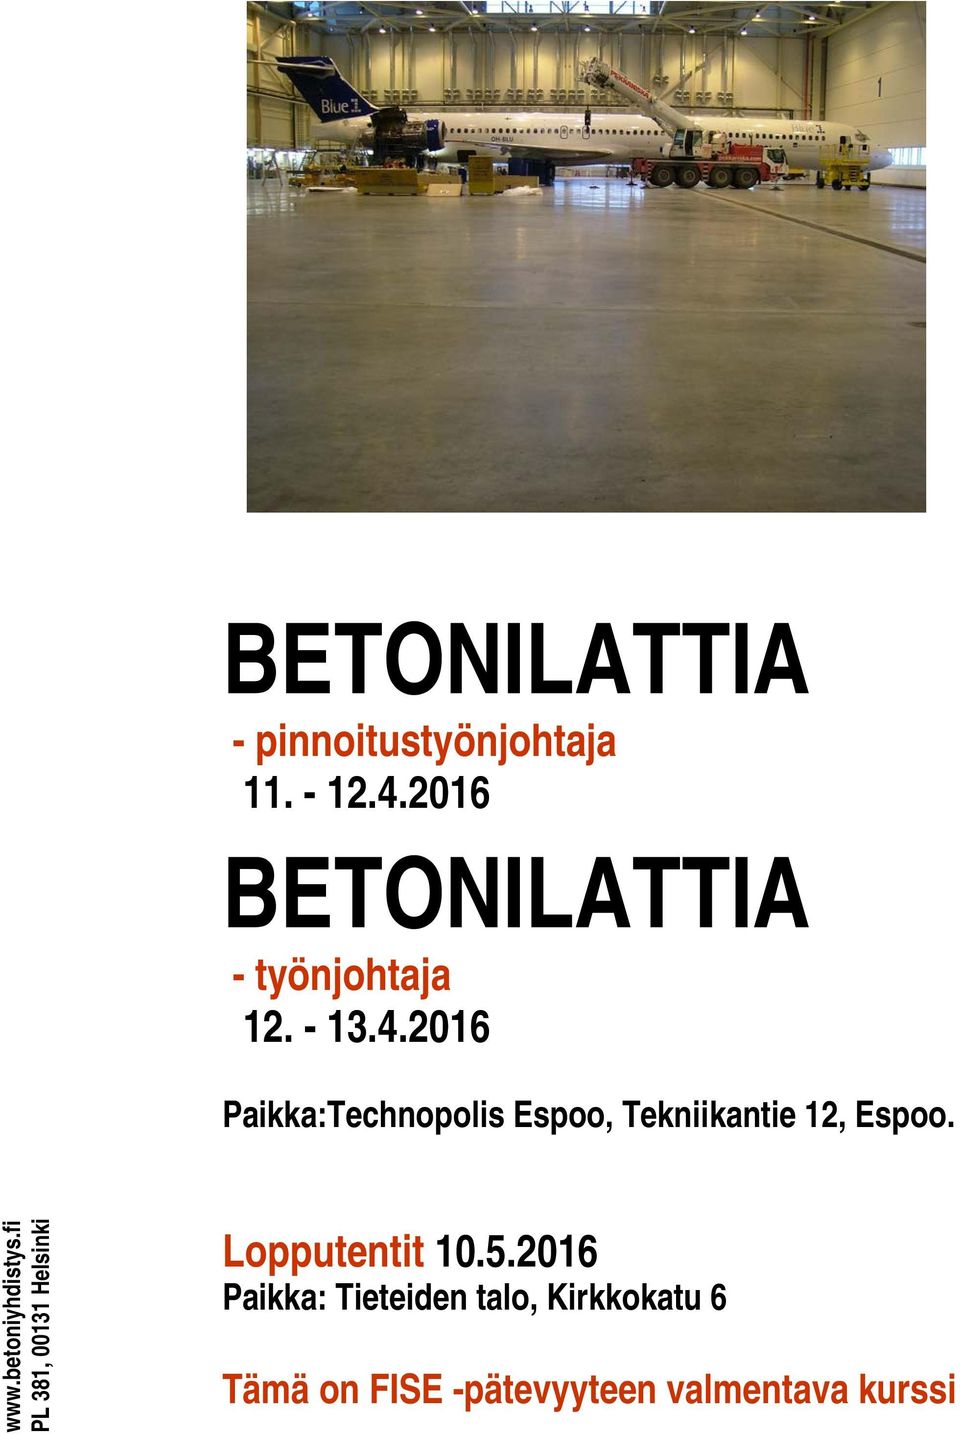 2016 Paikka:Technopolis Espoo, Tekniikantie 12, Espoo. www.